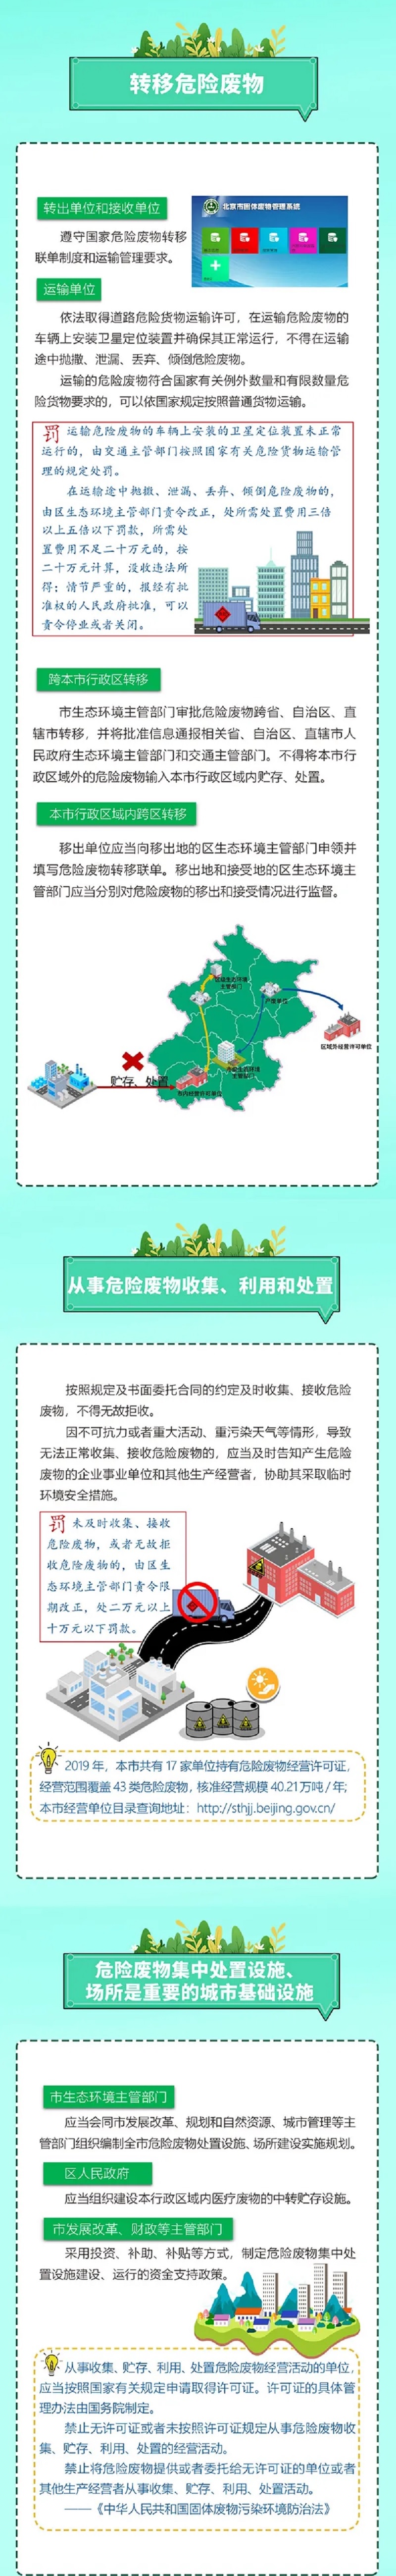 图解《北京市危险废物污染环境防治条例》-3.jpg